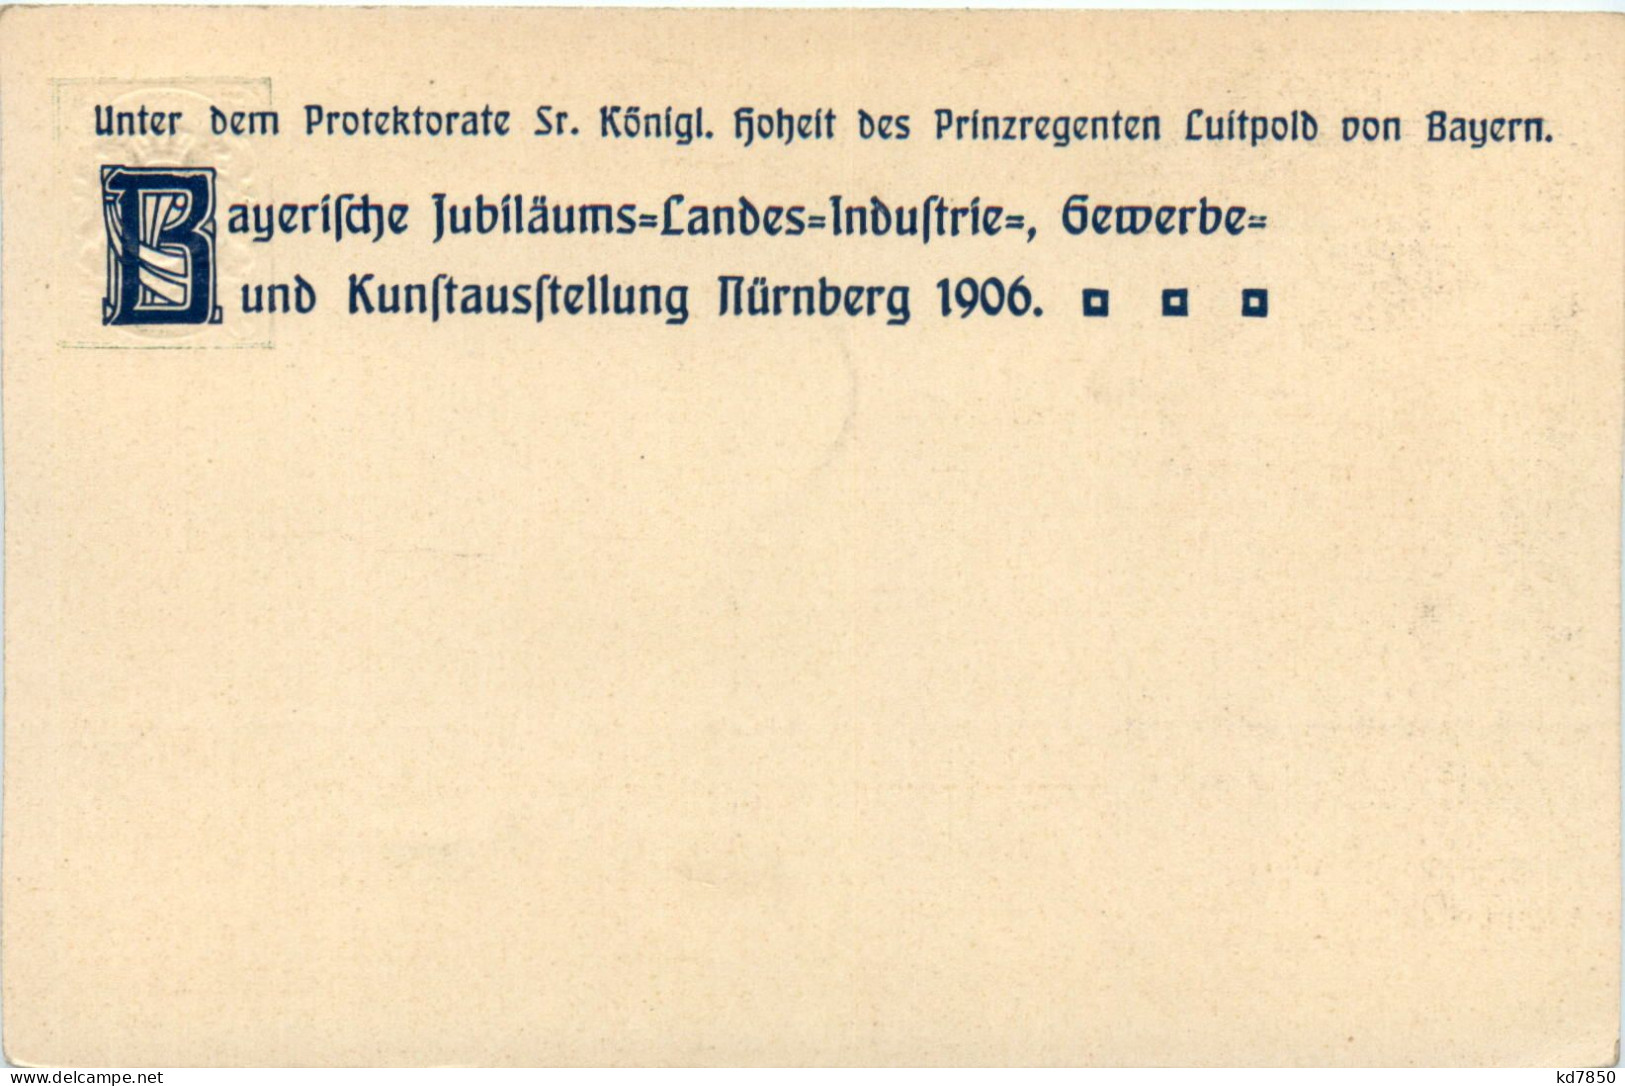 Nürnberg - Industrie Und Kunstausstellung 1906 - Ganzsache - Nürnberg